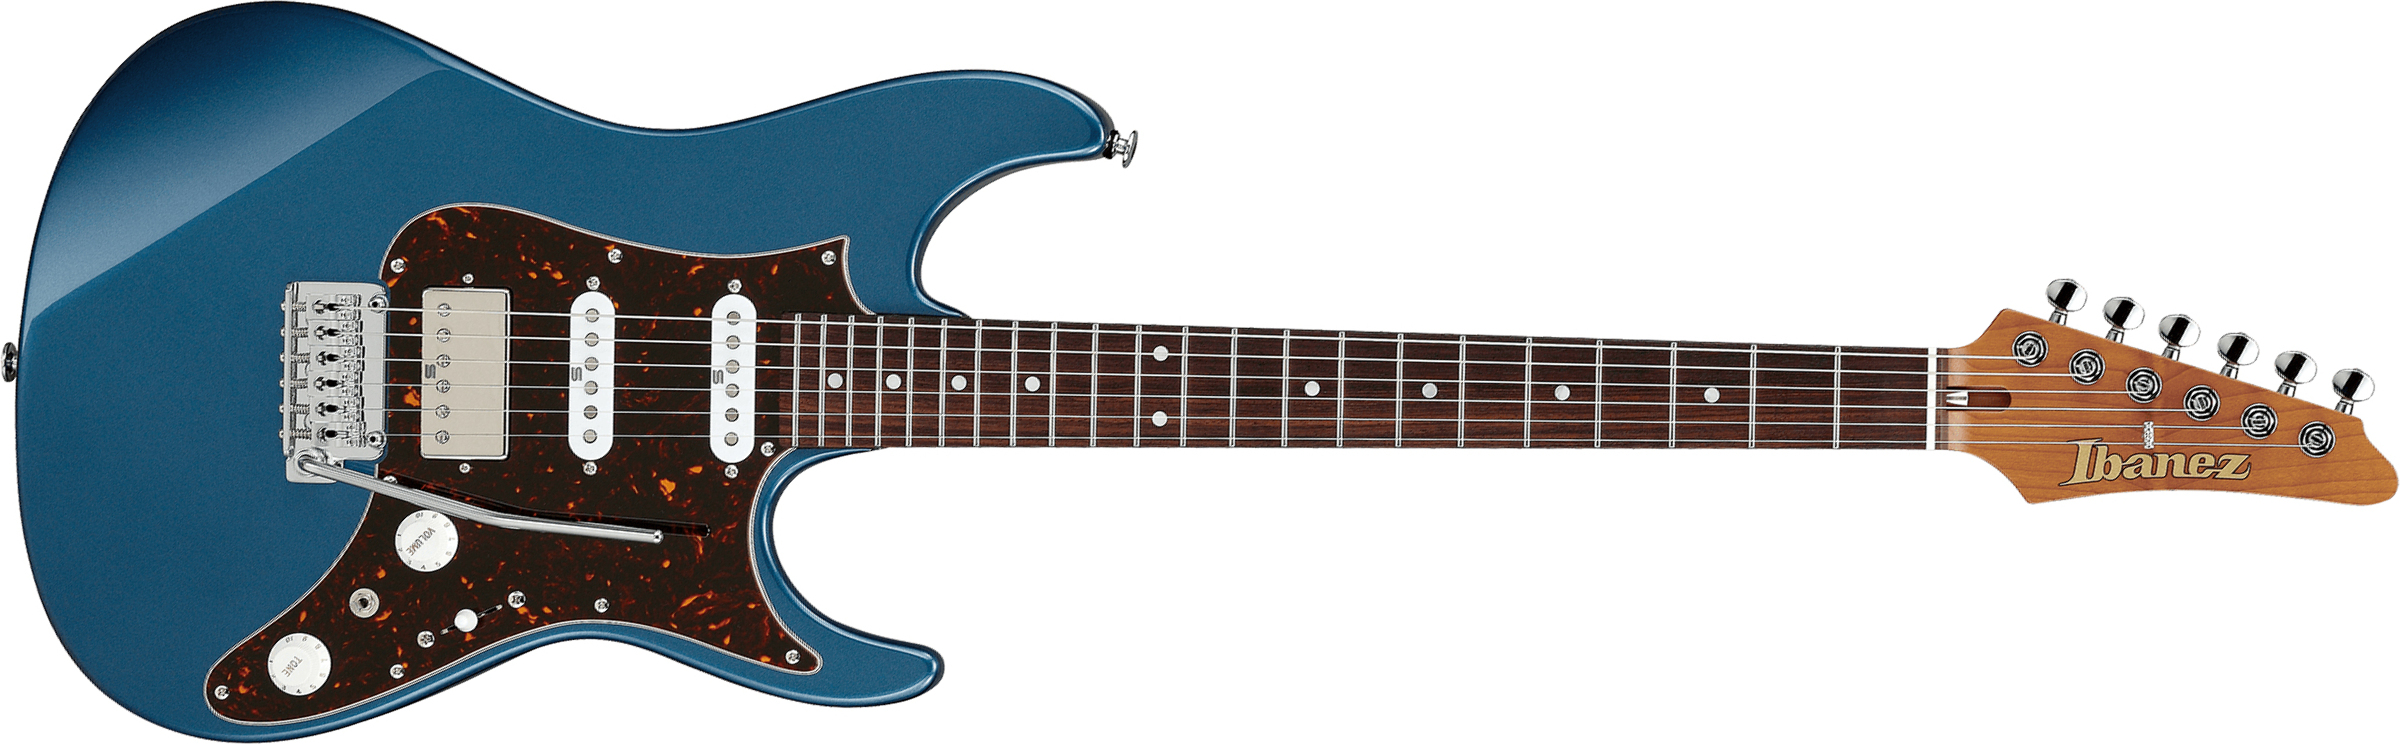 Ibanez Az2204n Pbm Prestige Jap Hss Seymour Duncan Trem Rw - Prussian Blue Metallic - Guitarra eléctrica con forma de str. - Main picture